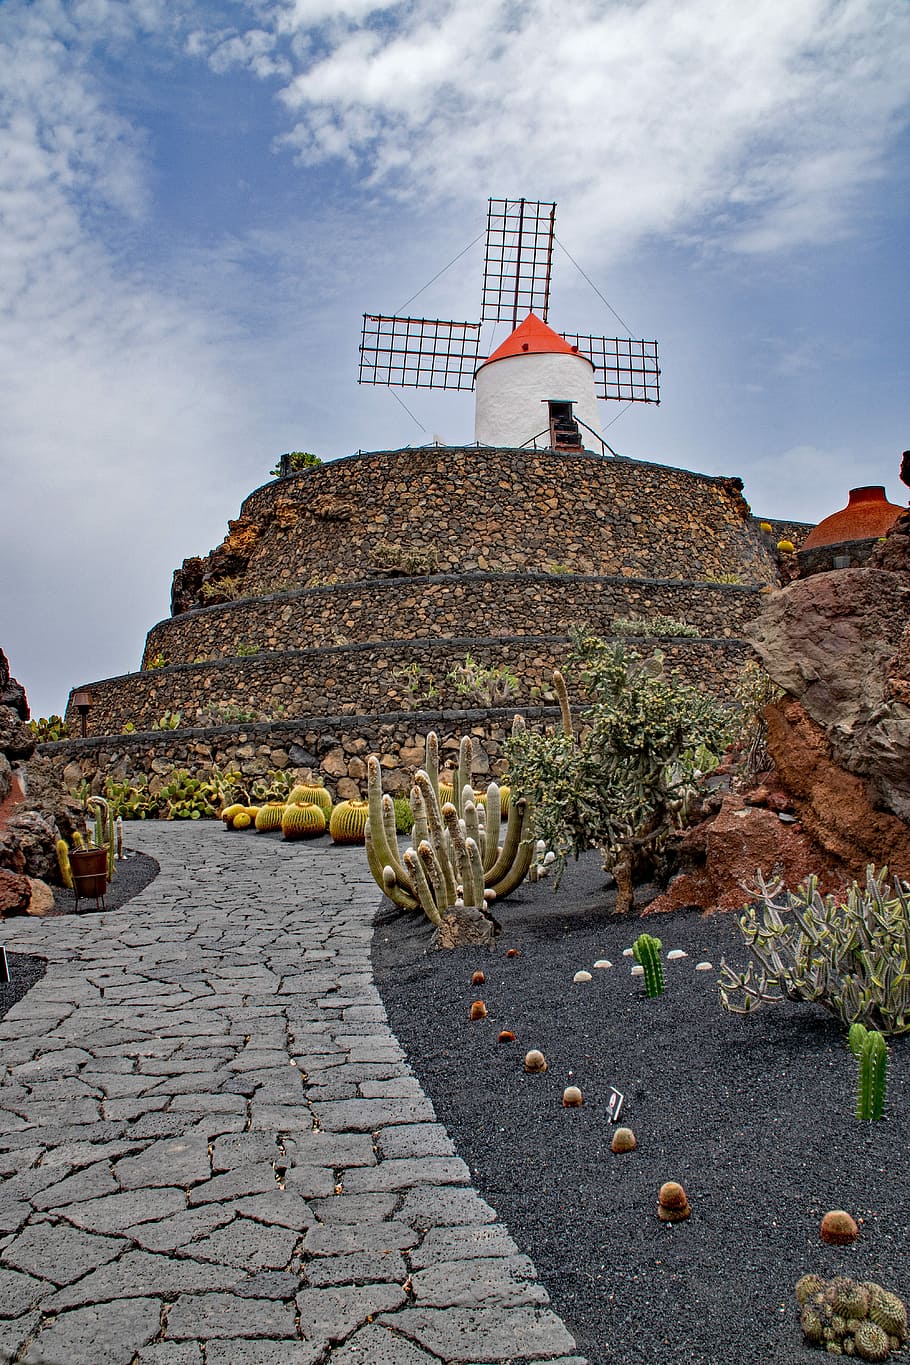 Jardin, De, Cacto, Lanzarote, Jardin de cactus, Espanha, atrações de África, guatiza, moinho de vento, lava